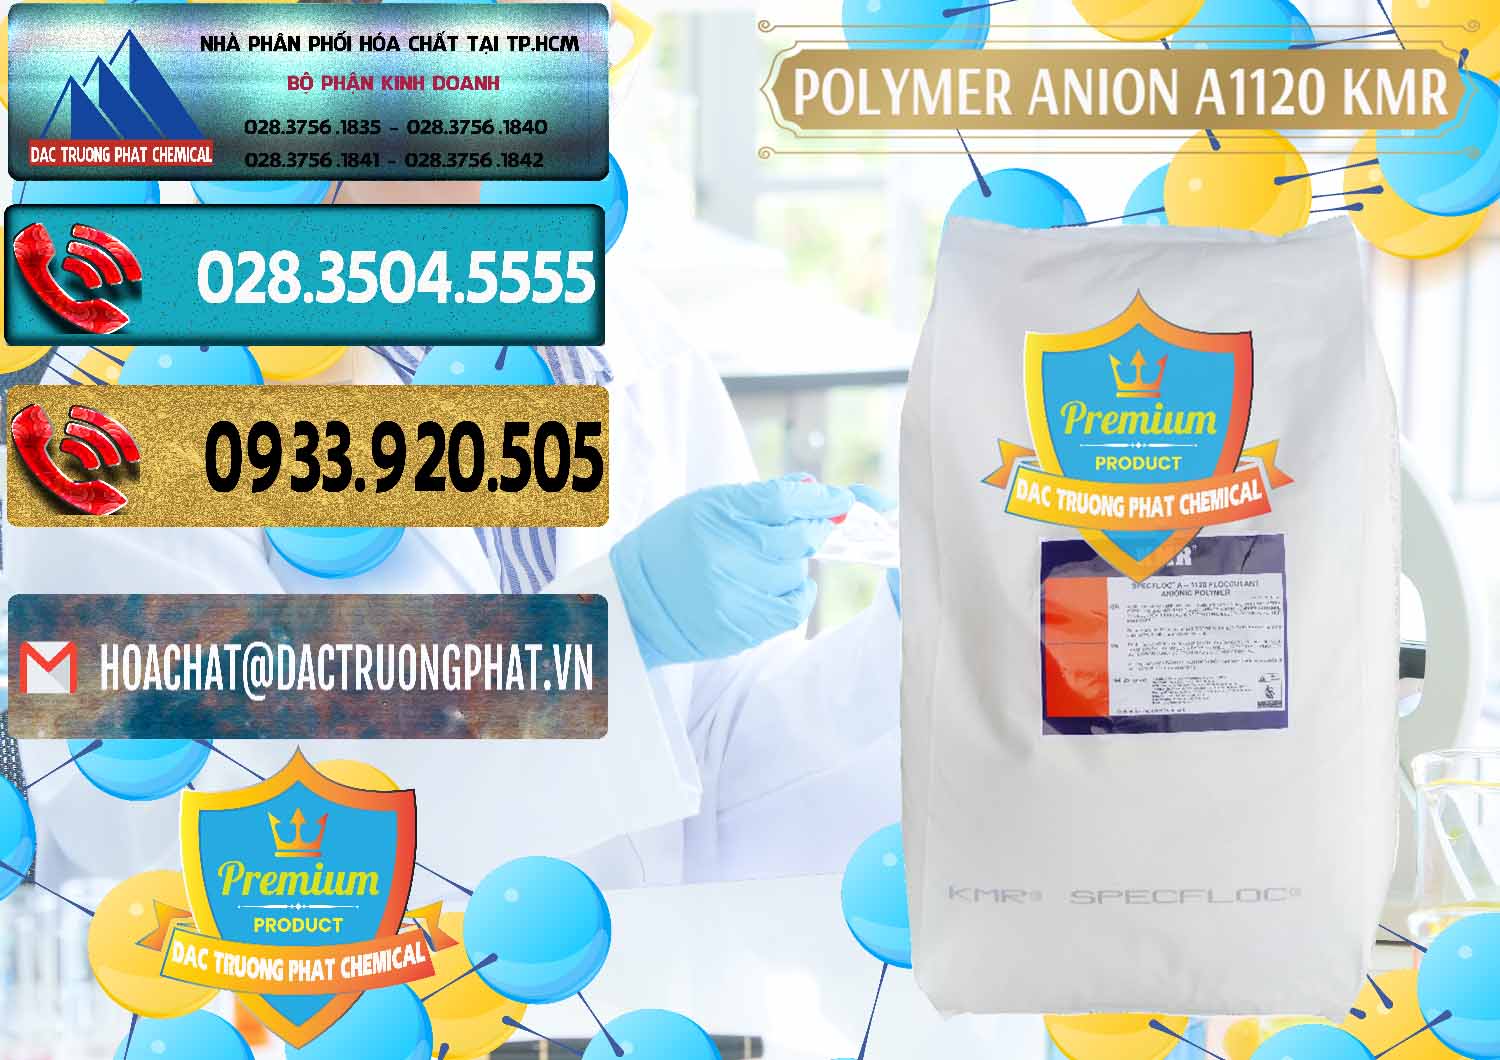 Công ty chuyên bán _ cung ứng Polymer Anion A1120 - KMR Anh Quốc England - 0119 - Công ty chuyên nhập khẩu _ phân phối hóa chất tại TP.HCM - hoachatdetnhuom.com